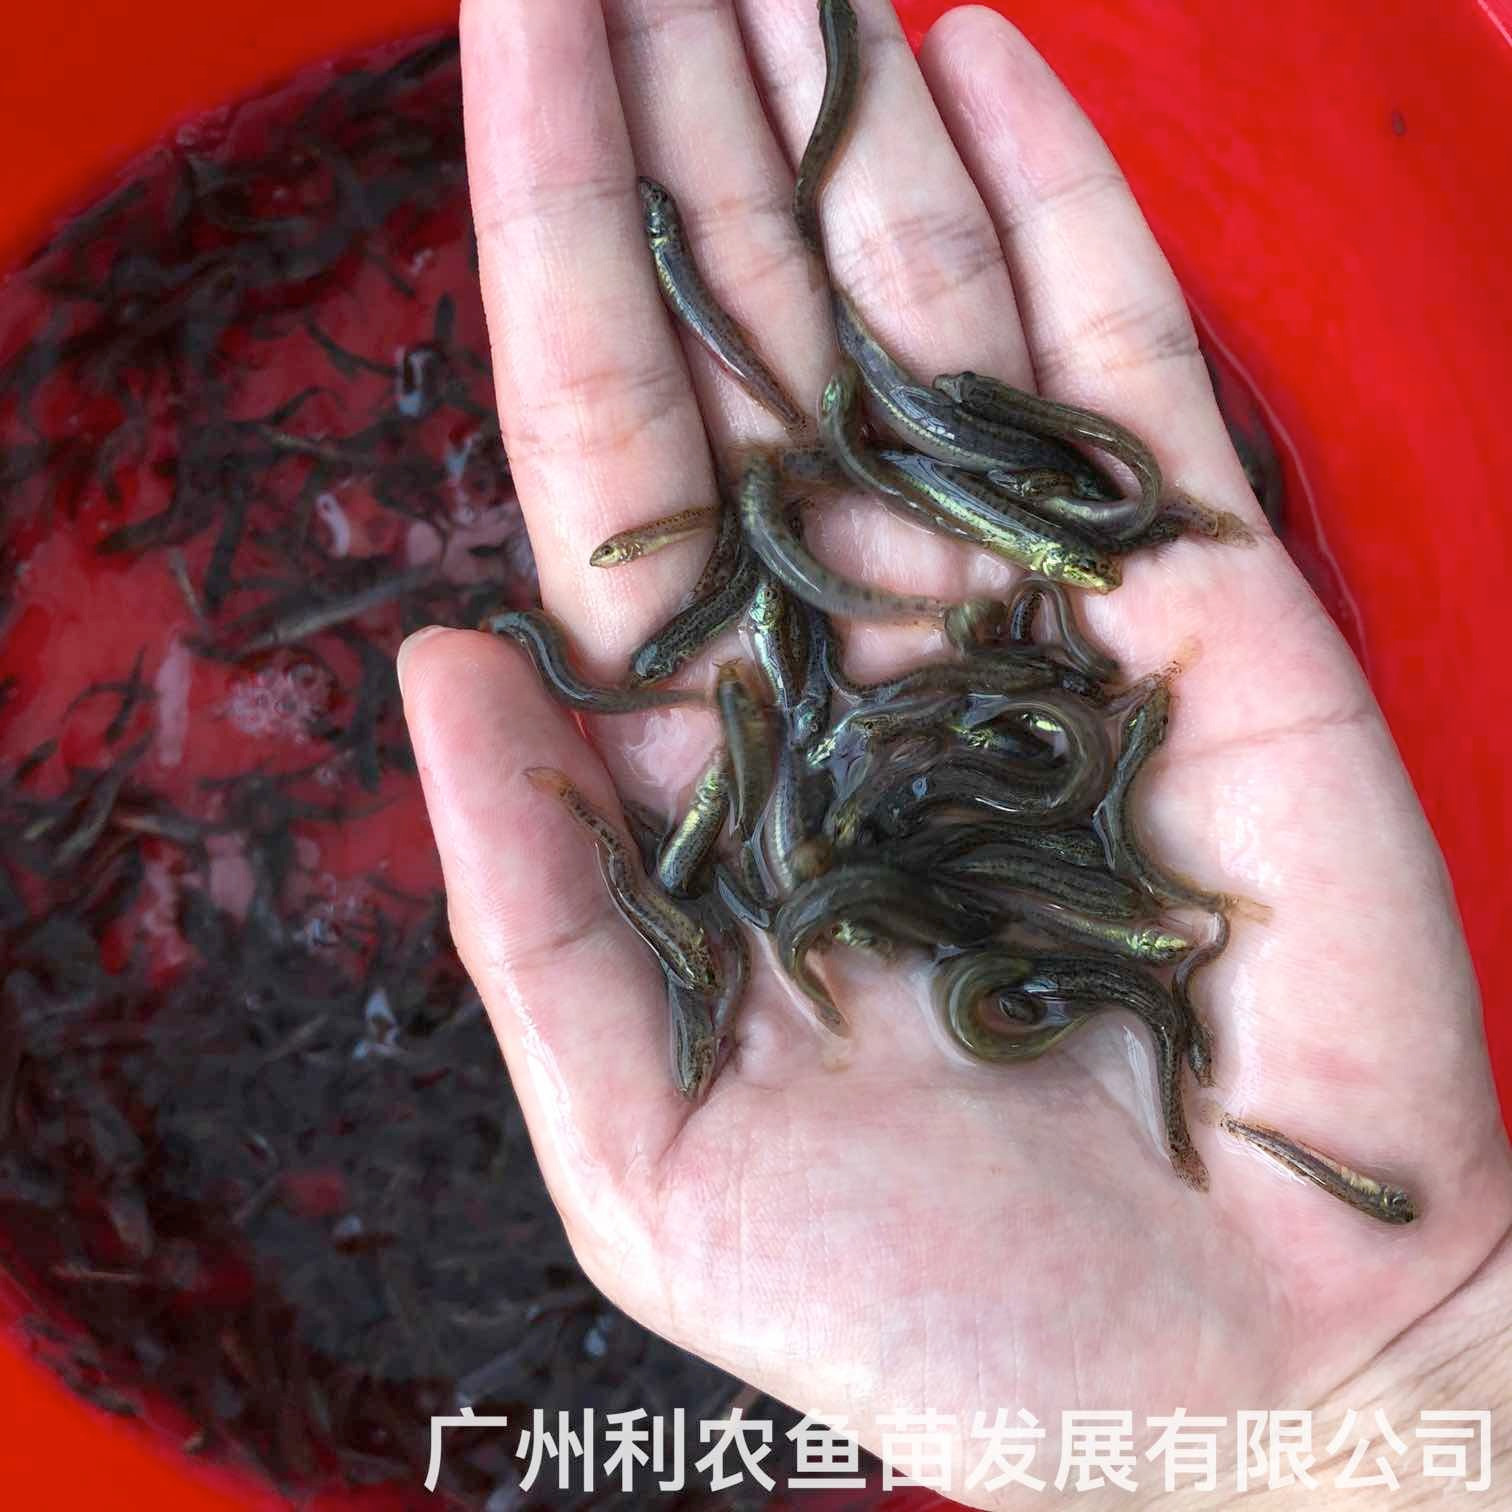 湖南长沙台湾泥鳅苗出售出售价格湖南郴州泥鳅鱼苗批发养殖基地